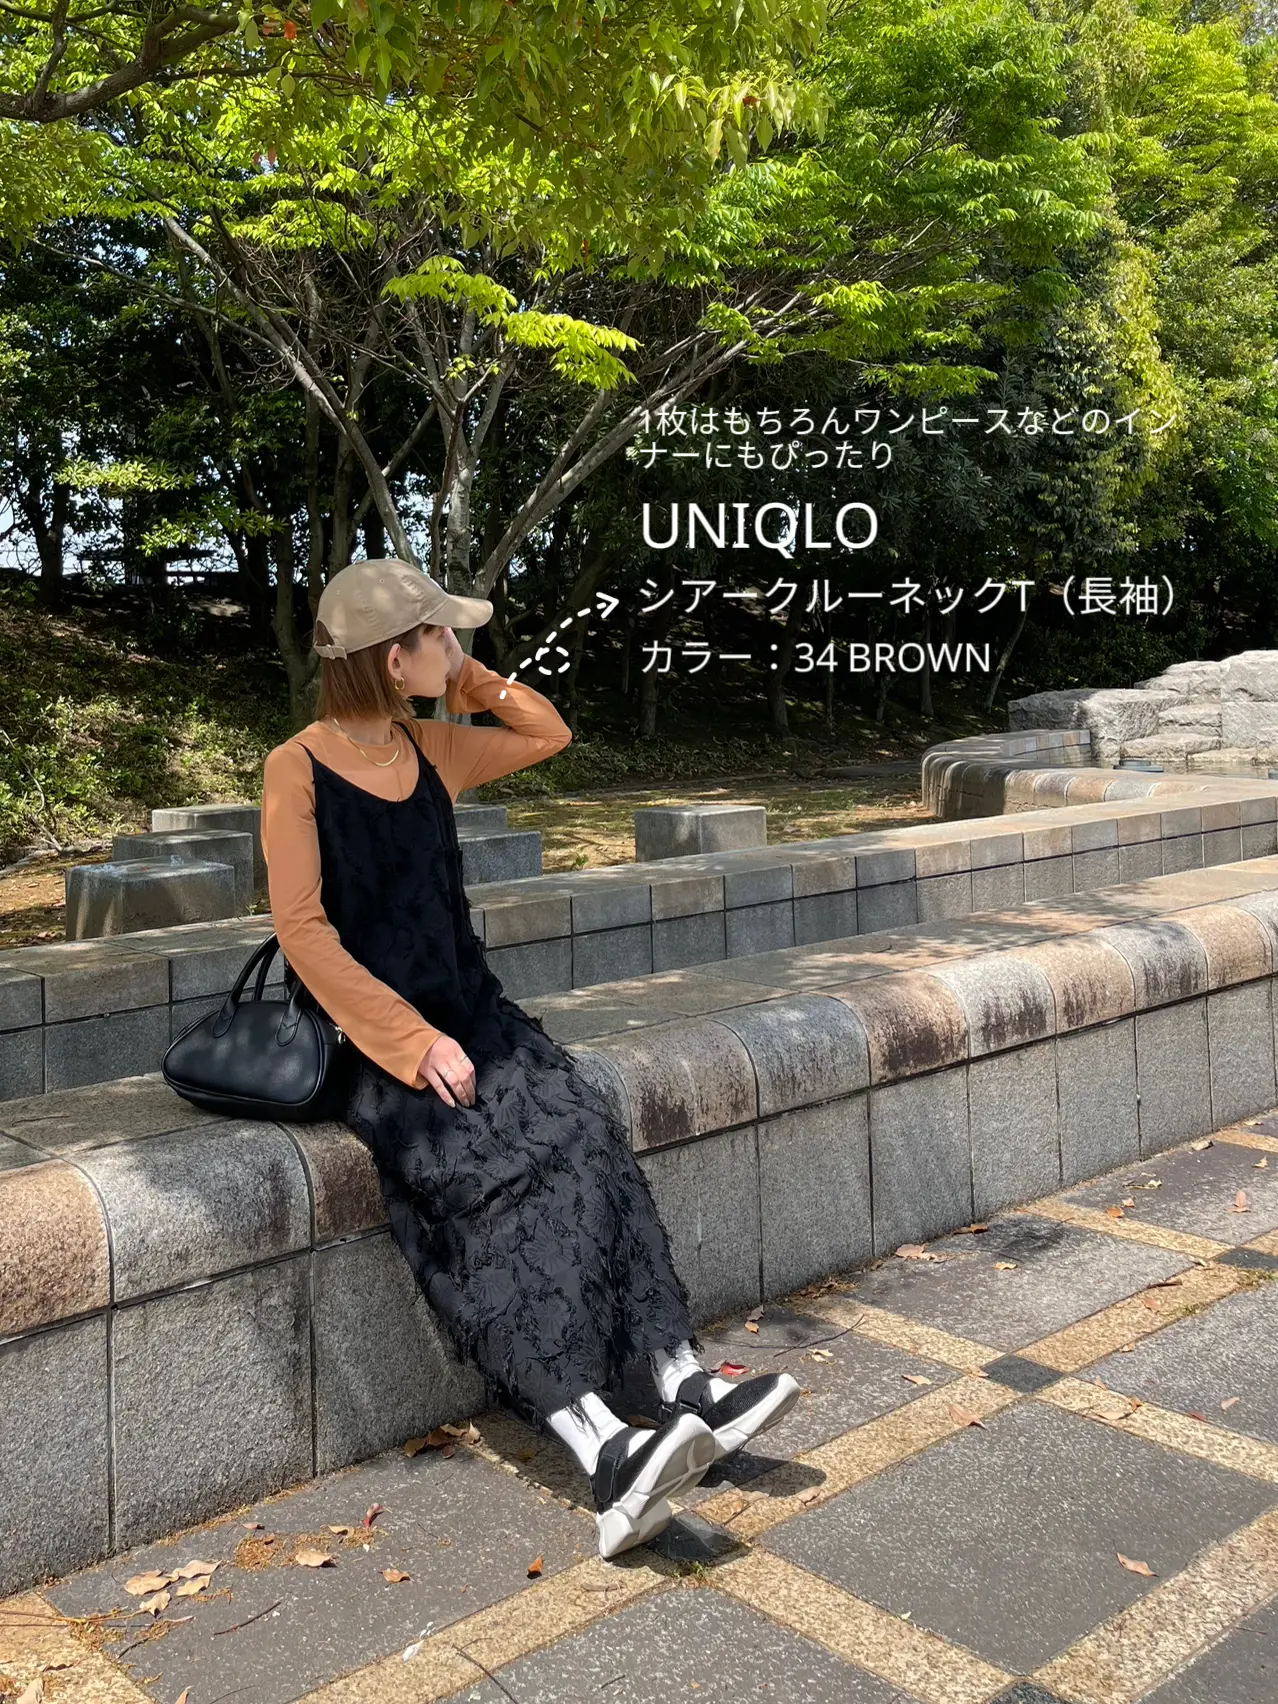 UNIQLO MameKurogouchi -シアートップスでカジュアルコーデ